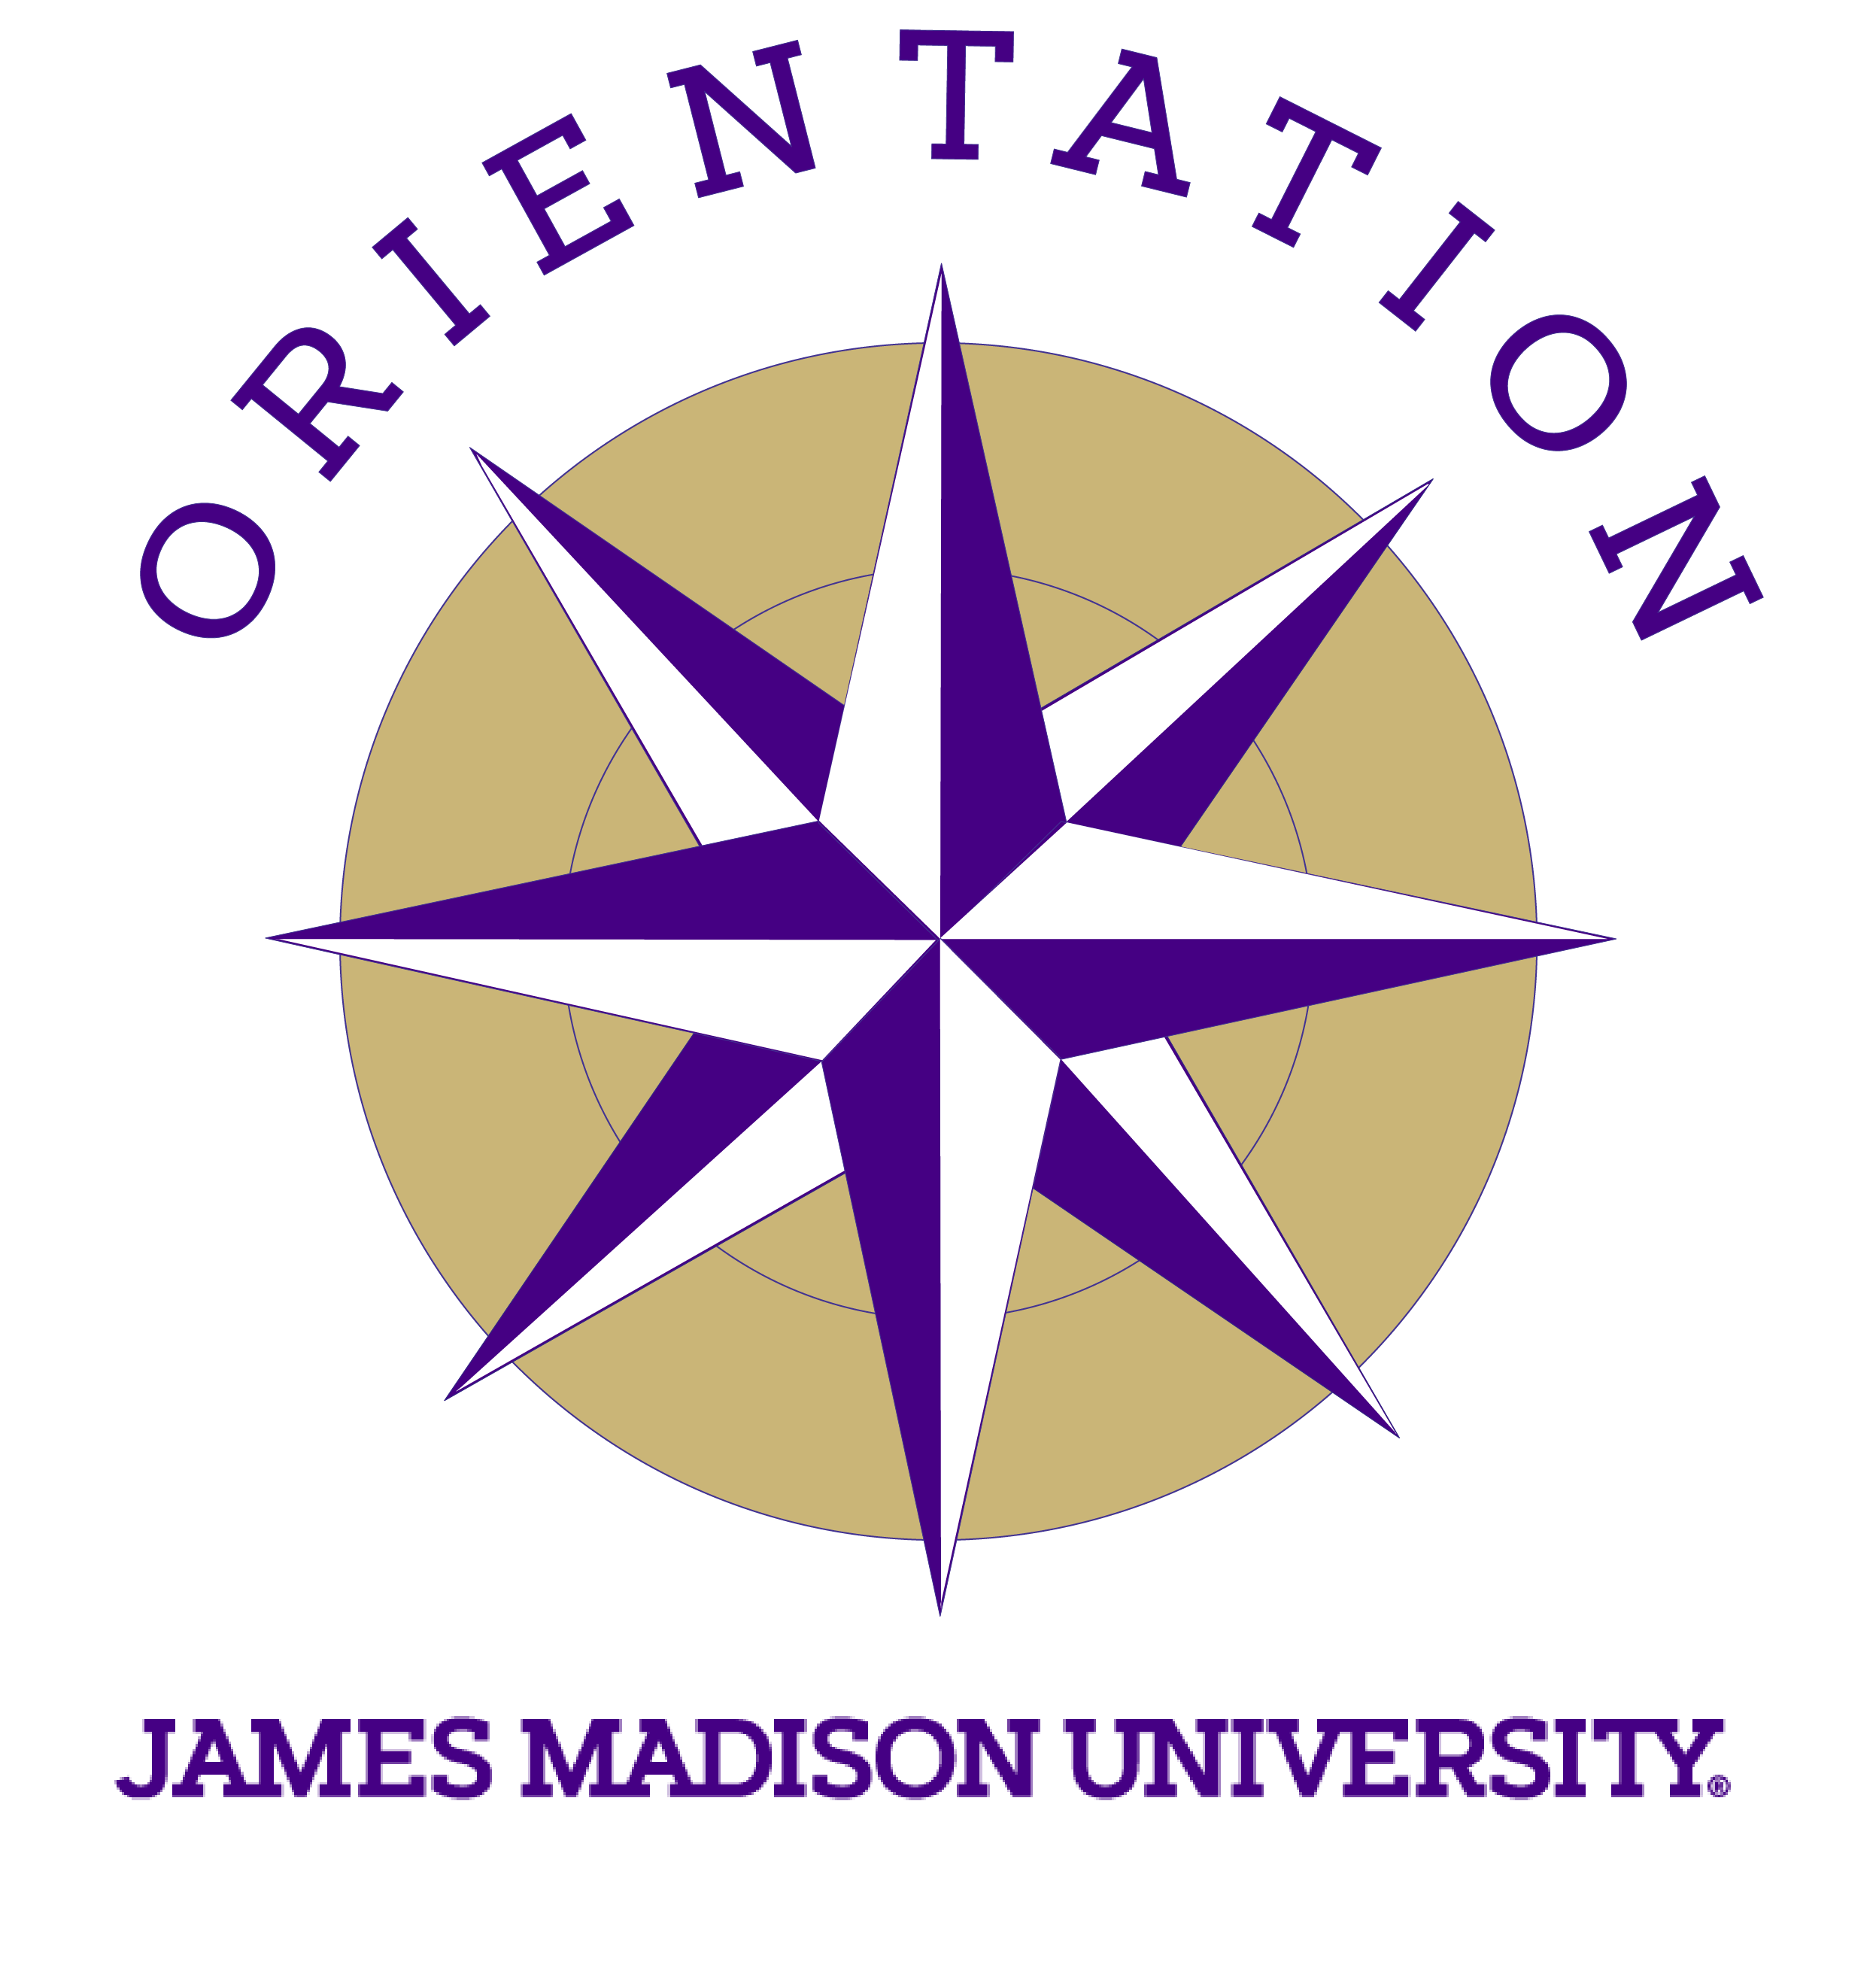 James Madison University orientation logo